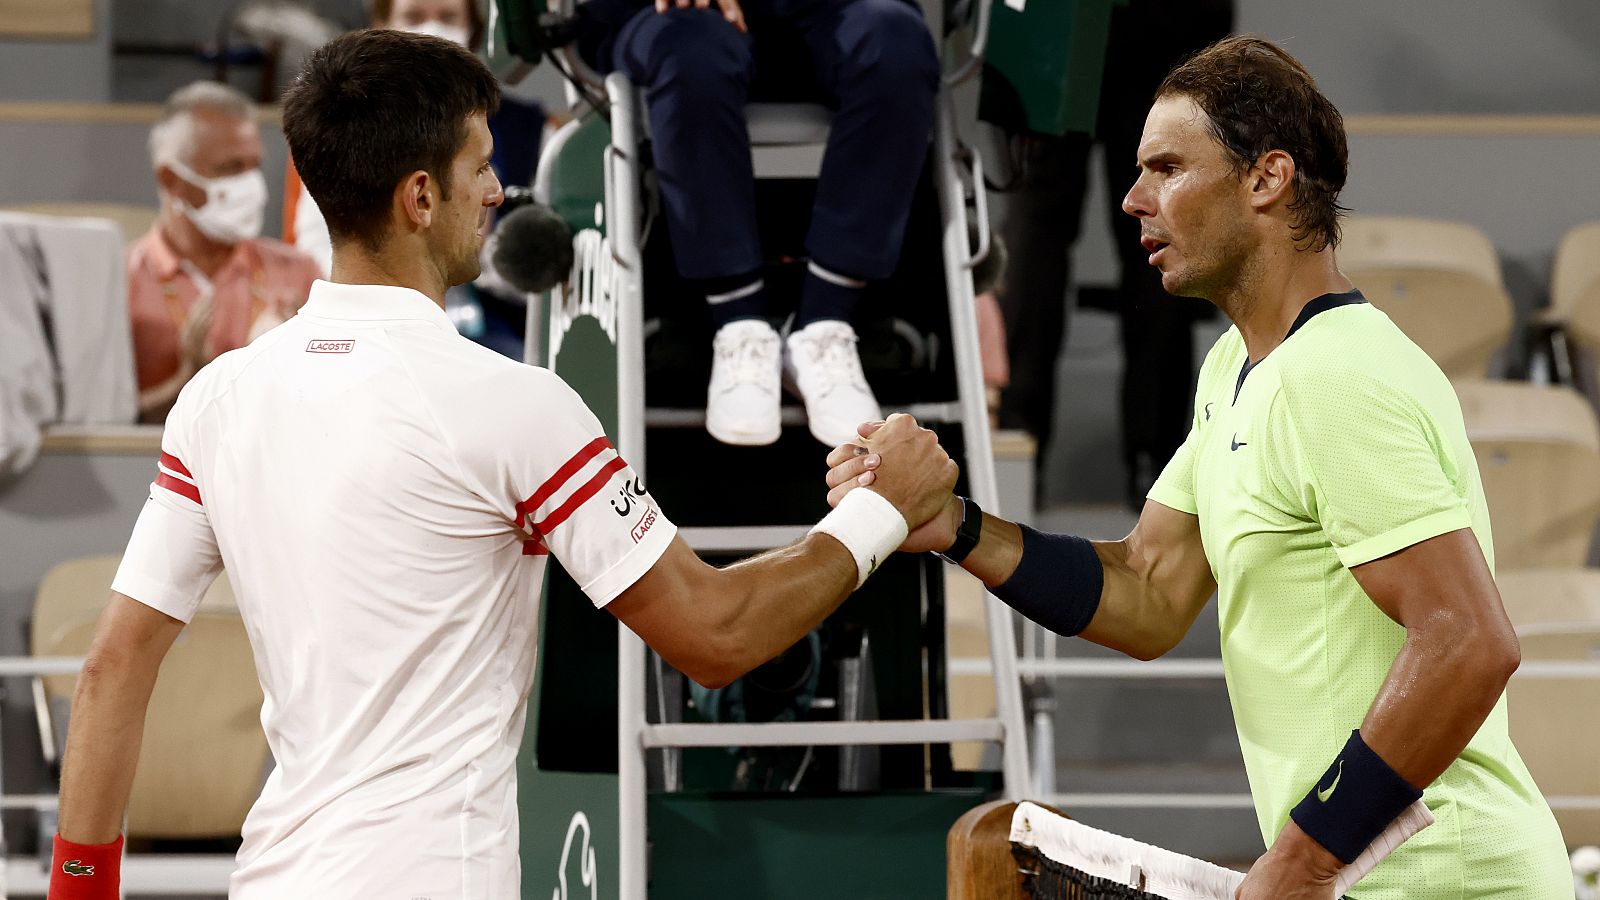 El clásico Nadal-Djokovic, por décima vez en Roland Garros